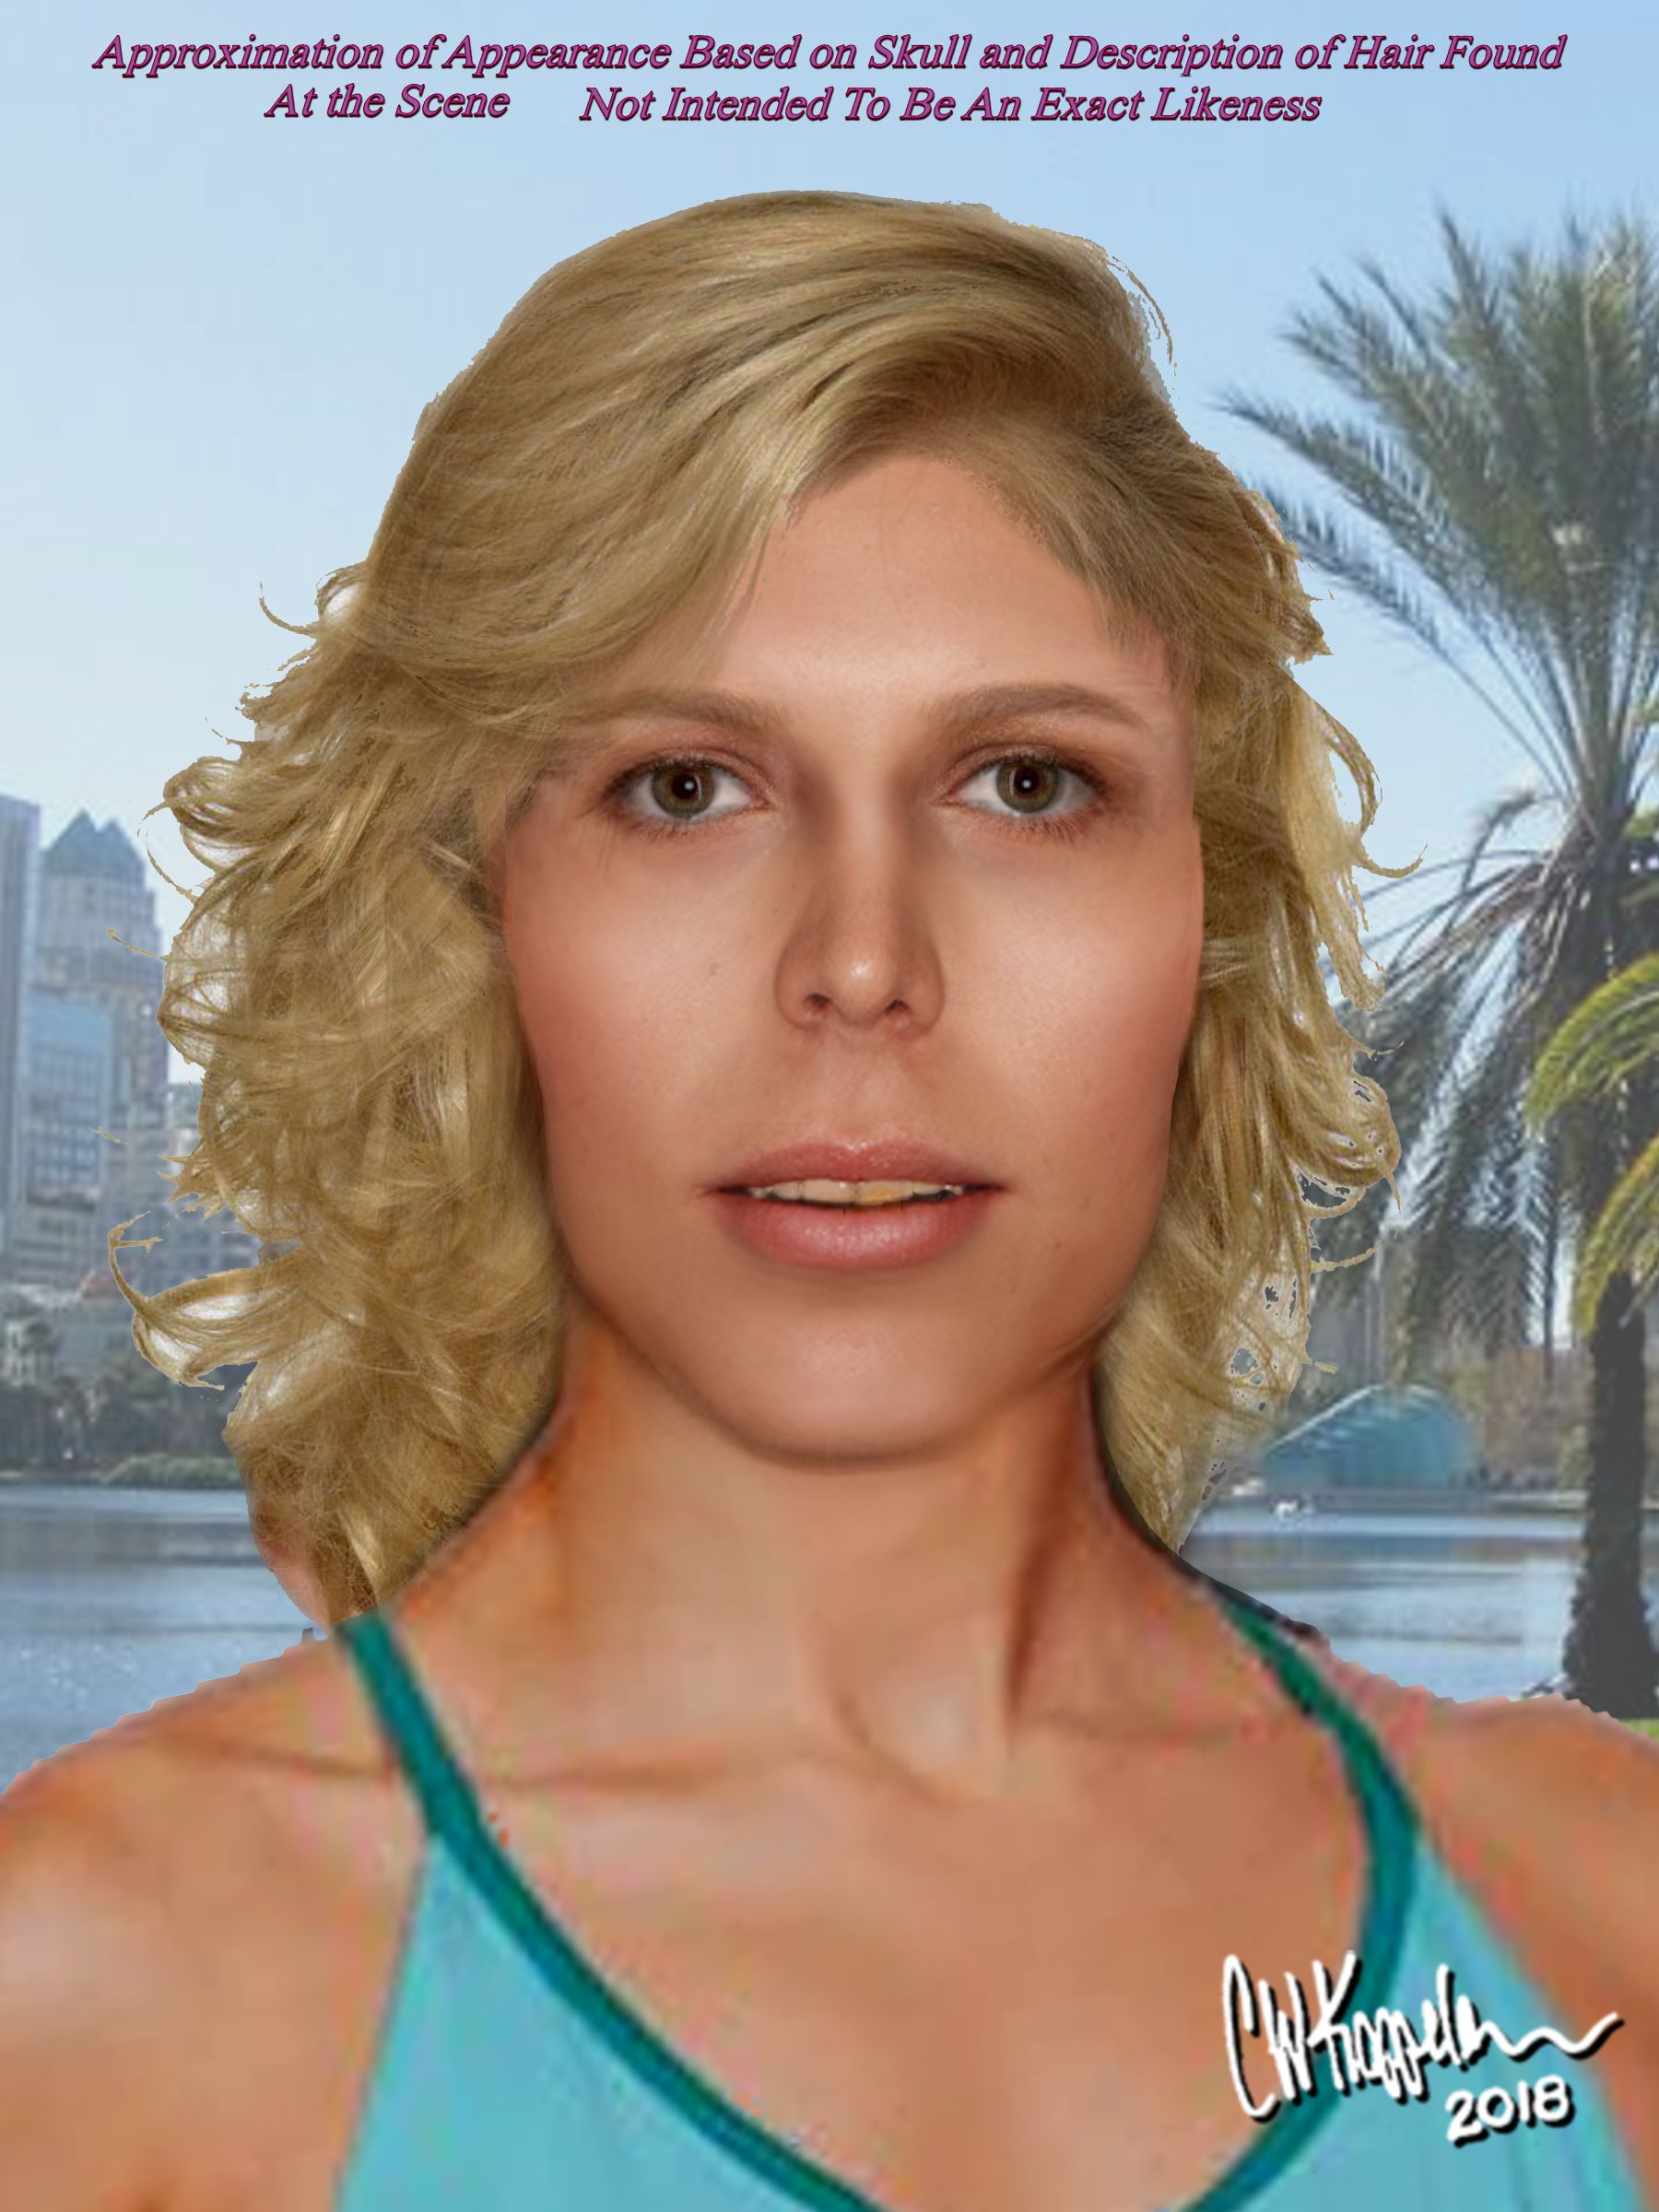 Image Carousel image #2.1 Transgender Julie Reconstruction (002).JPG